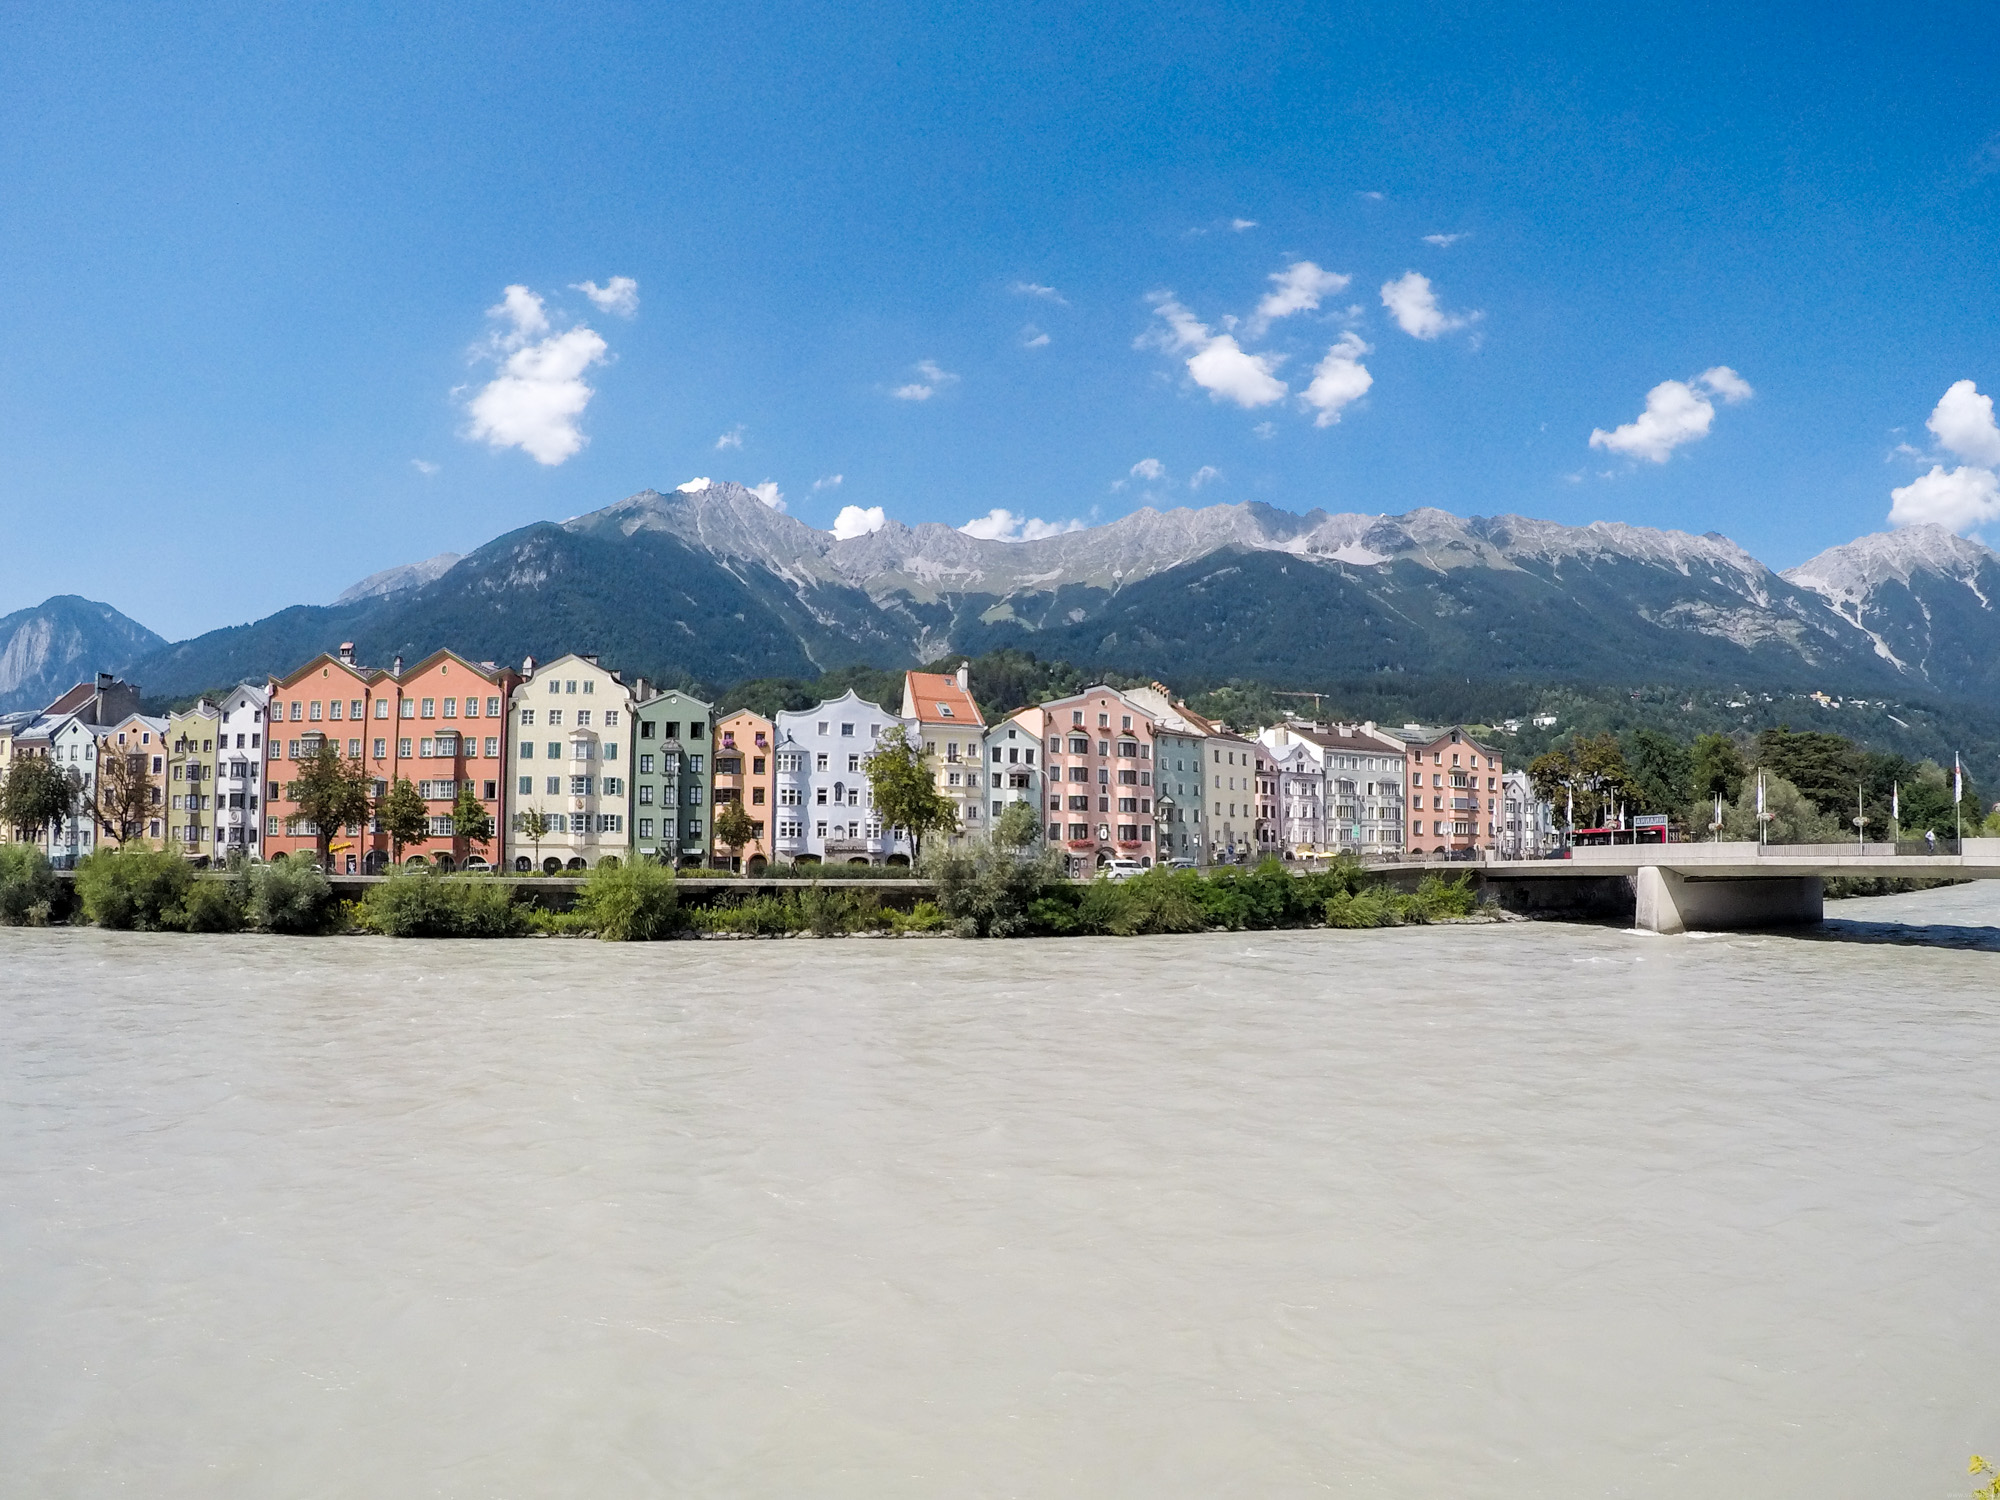 Innsbruck, hlavné mesto Tirolska, leží na rieke Inn. Piate najväčšie mesto v Rakúsku.